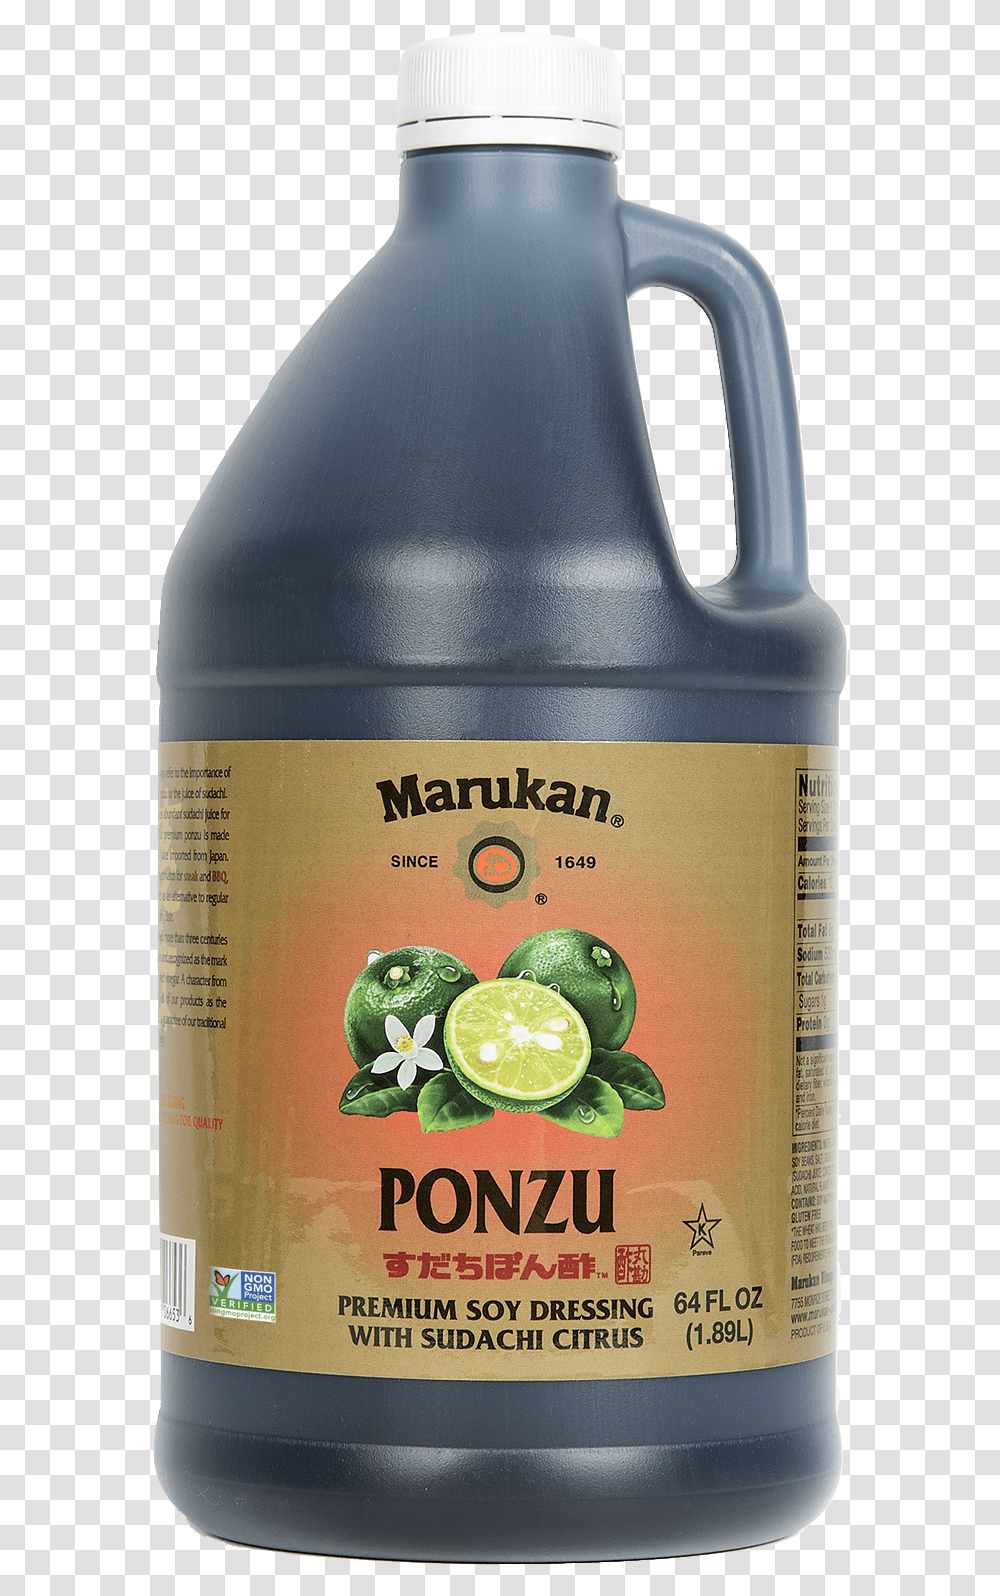 Ponzu Premium Soy Dressing With Sudachi Citrus Bottle, Citrus Fruit, Plant, Food, Beverage Transparent Png